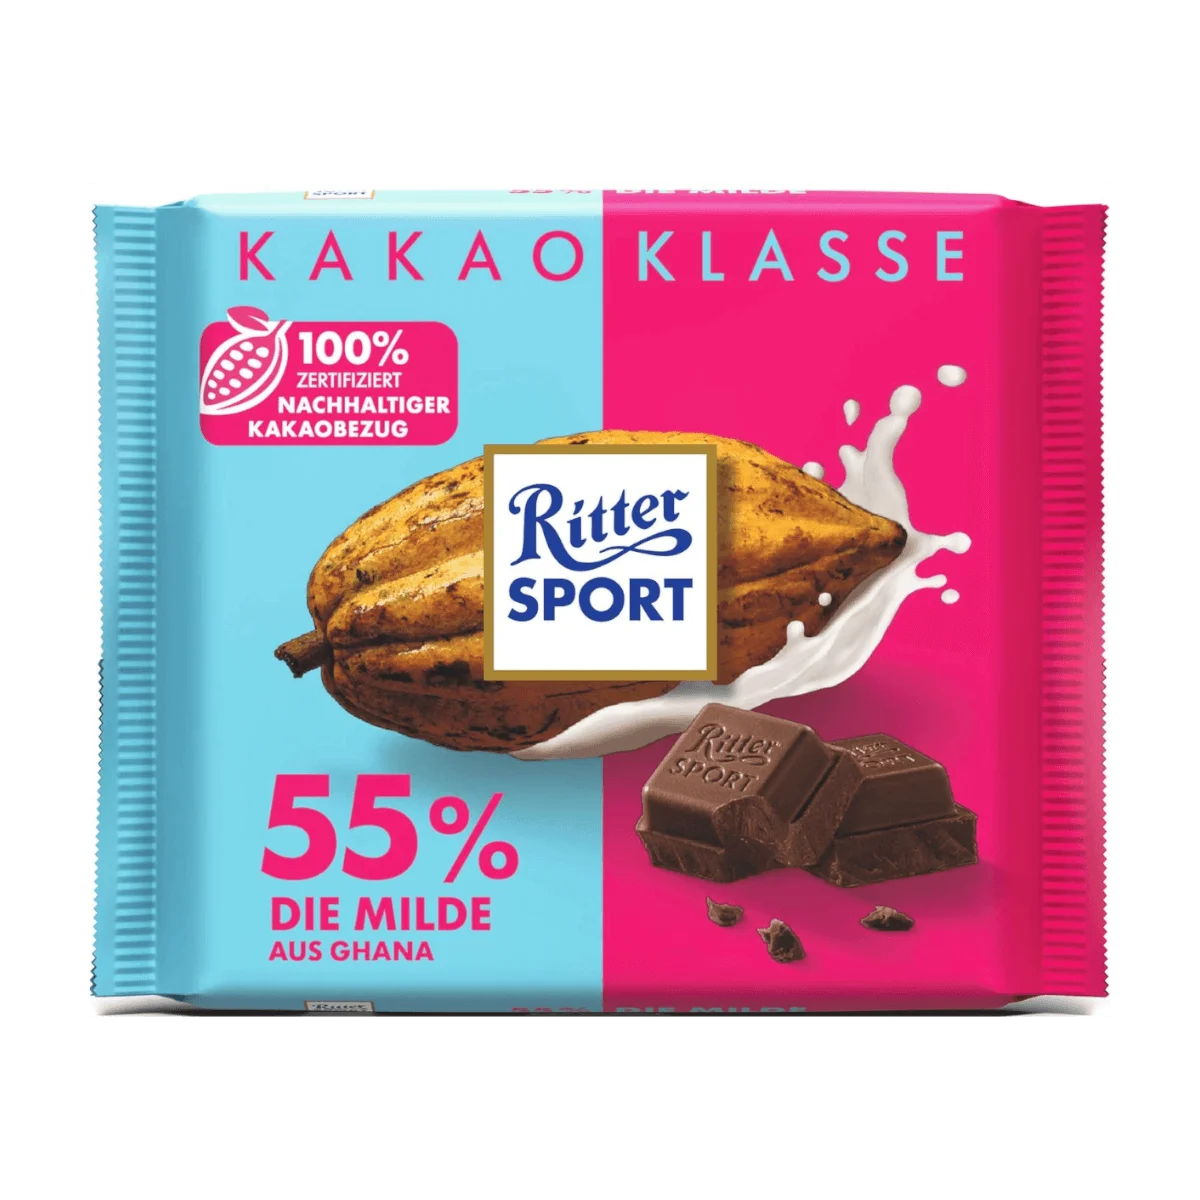 Ritter Sport Kakao-Klasse 55% Die Milde aus Ghana, 100 g